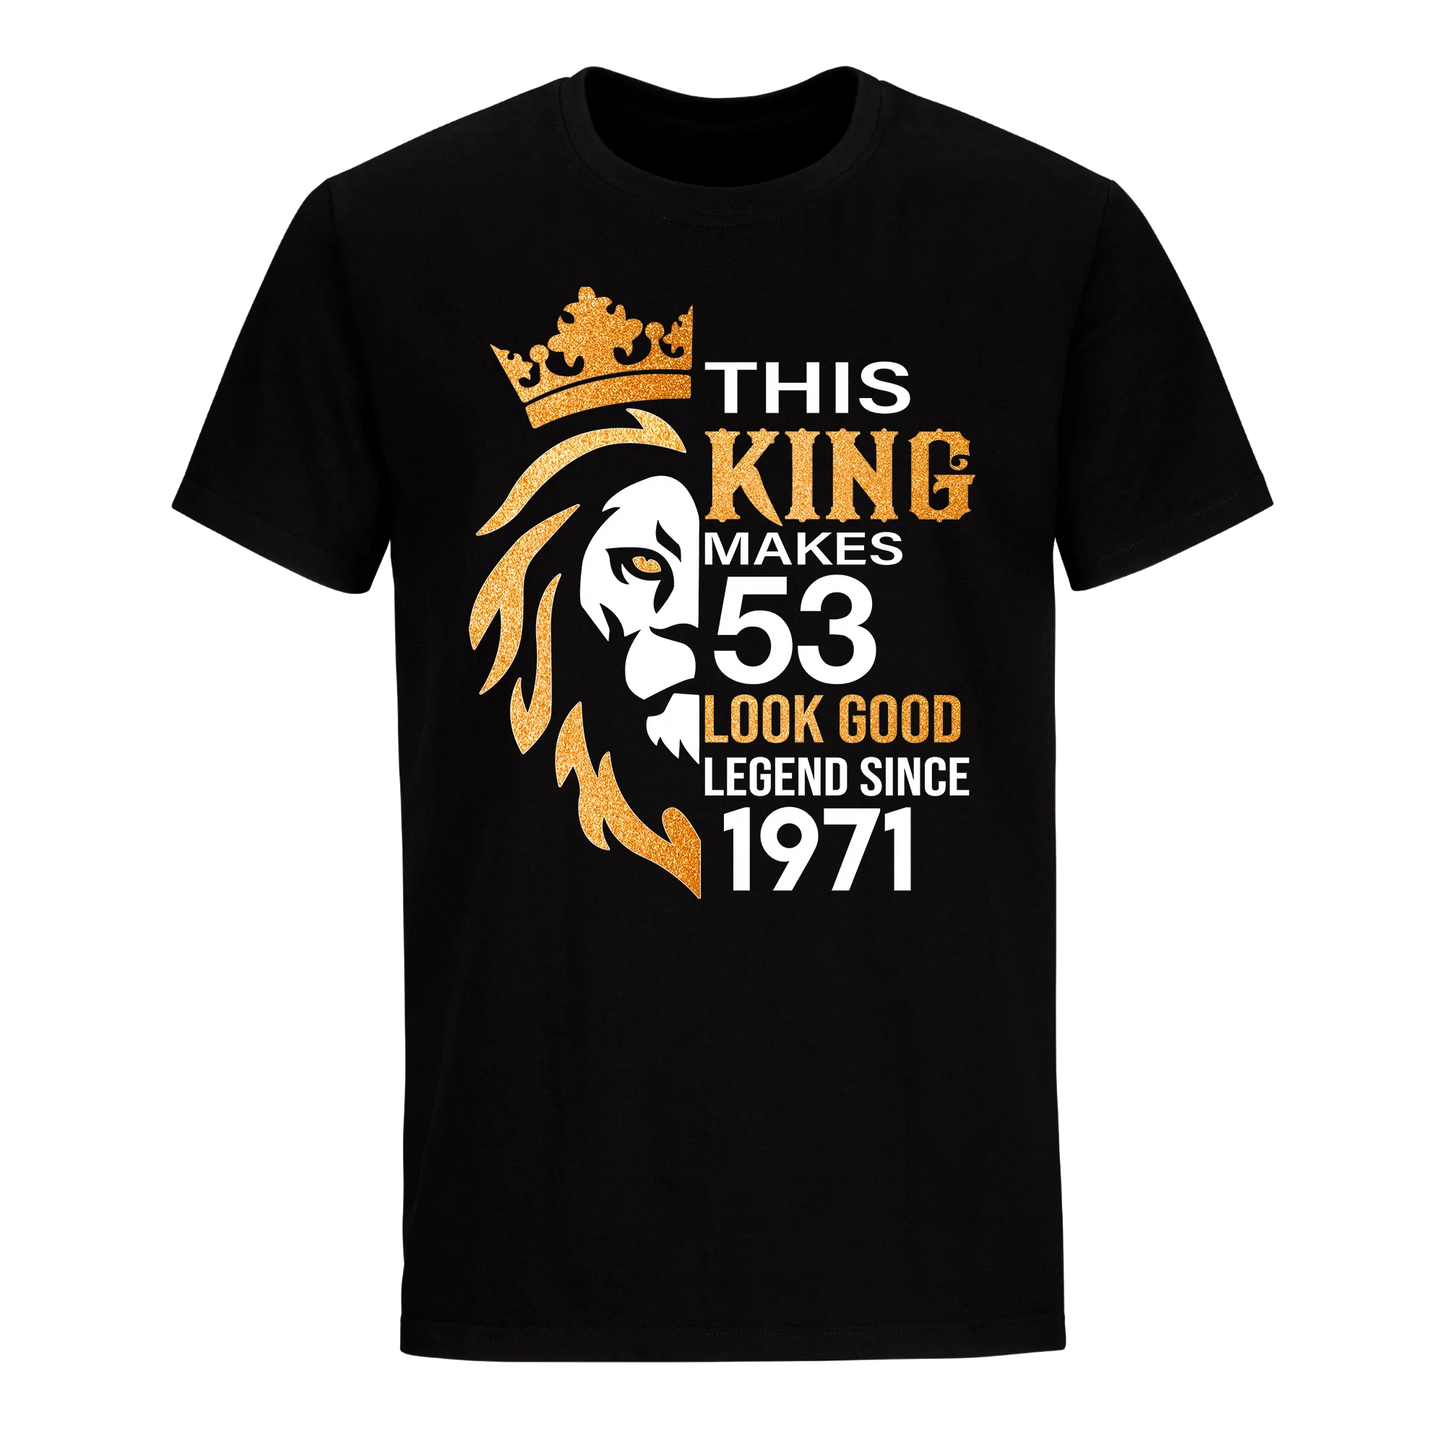 KING 53RD 1971 LEGEND UNISEX SHIRT